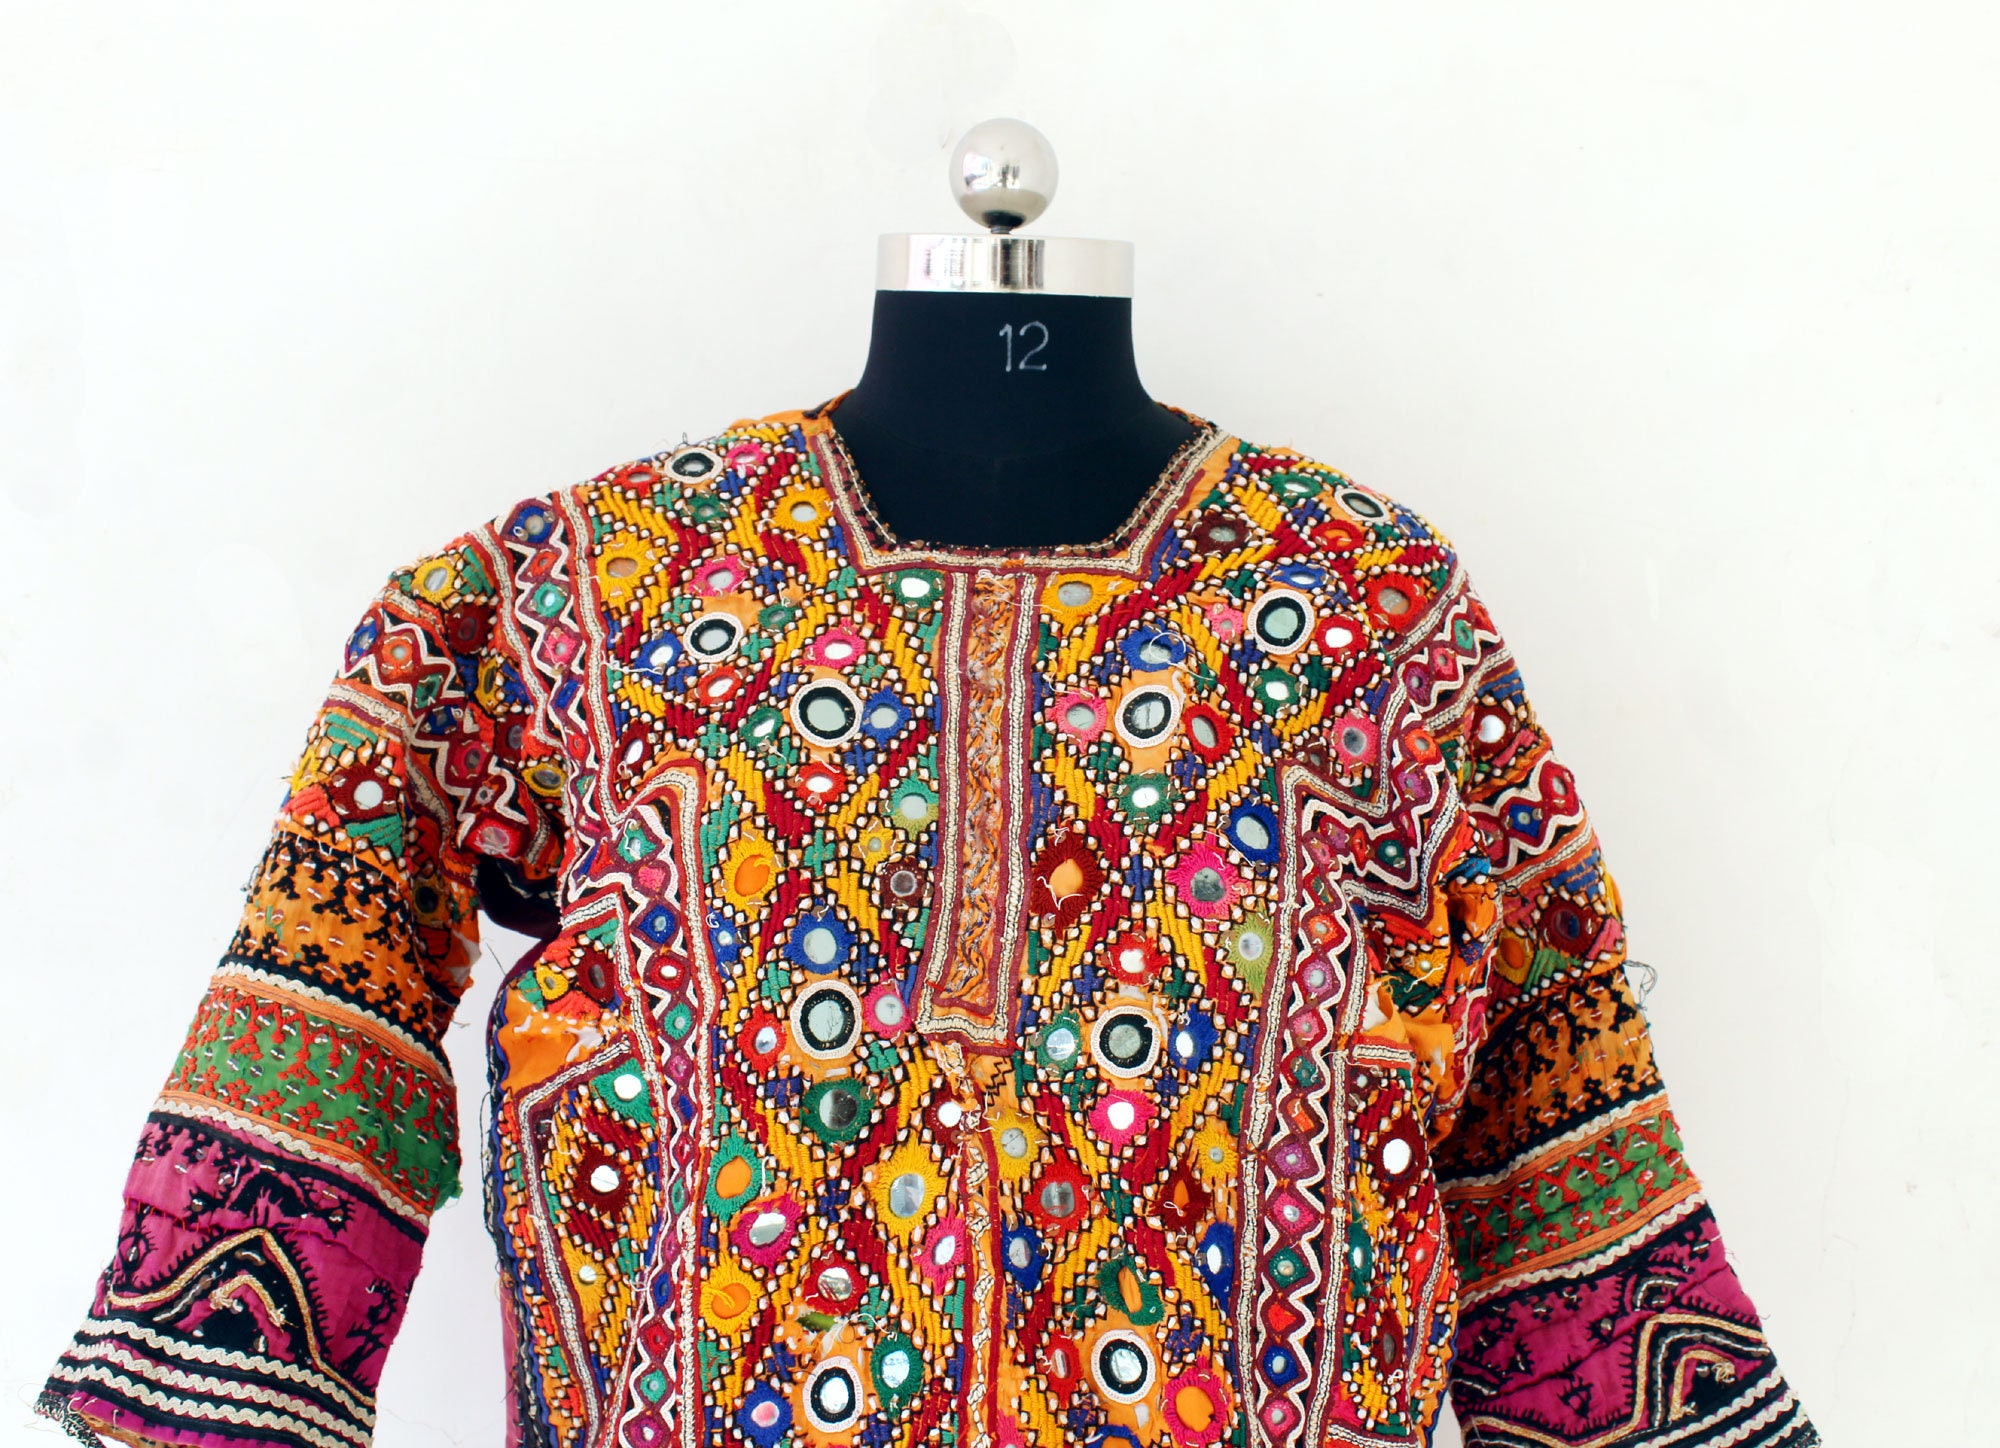 Mirror Work Baluchi Dress Hand Embroidered Baloch Top | Etsy